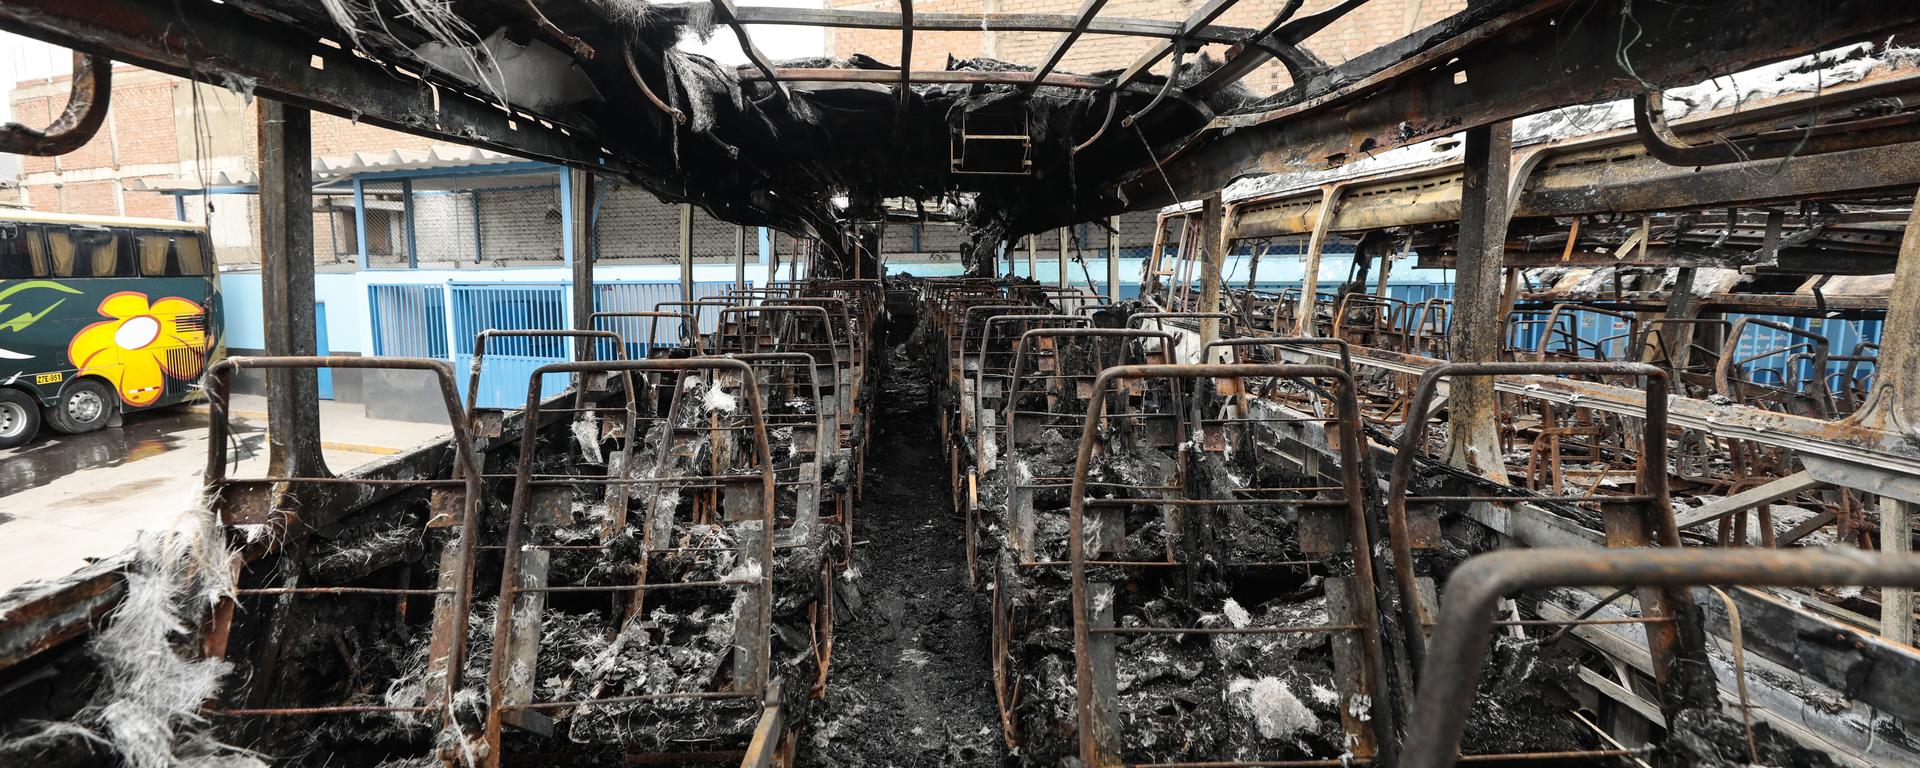 Fuego y explosiones: la historia detrás del atentado contra la empresa de transportes Flores Hermanos [FOTOS]